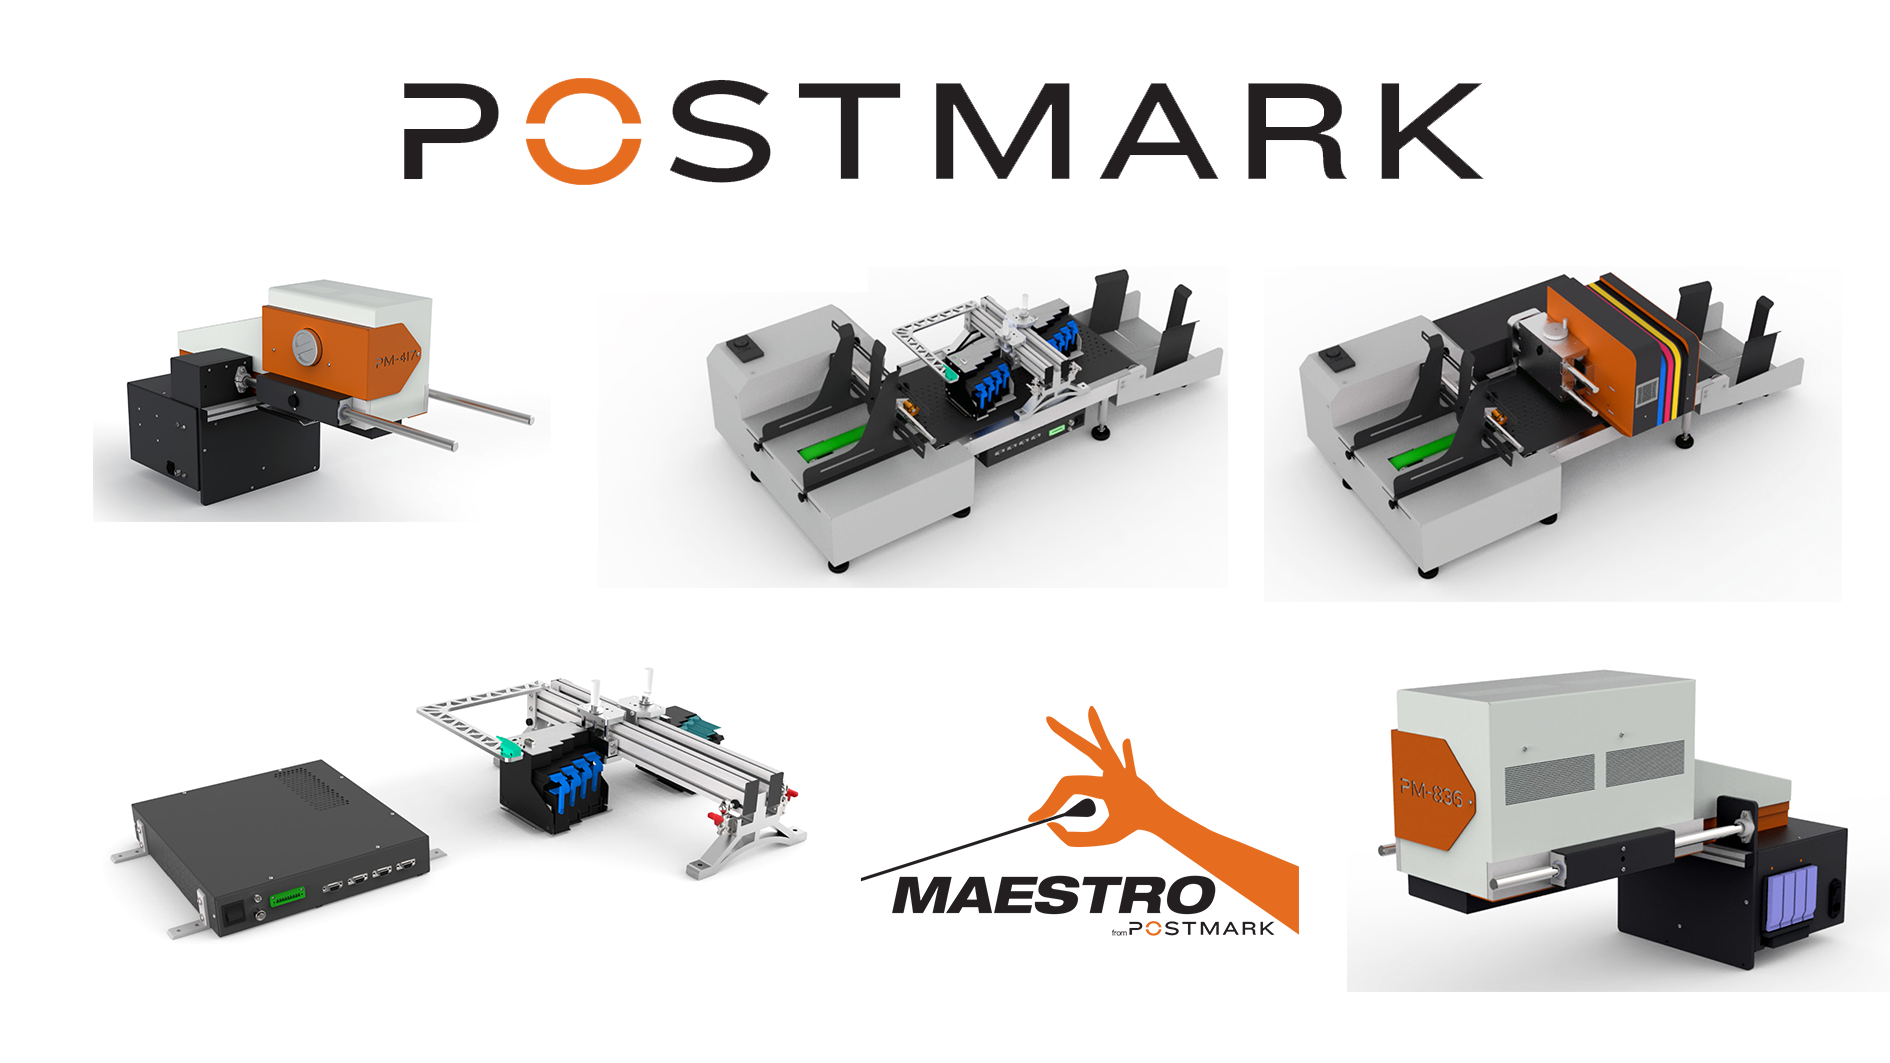 Postmark Maestro